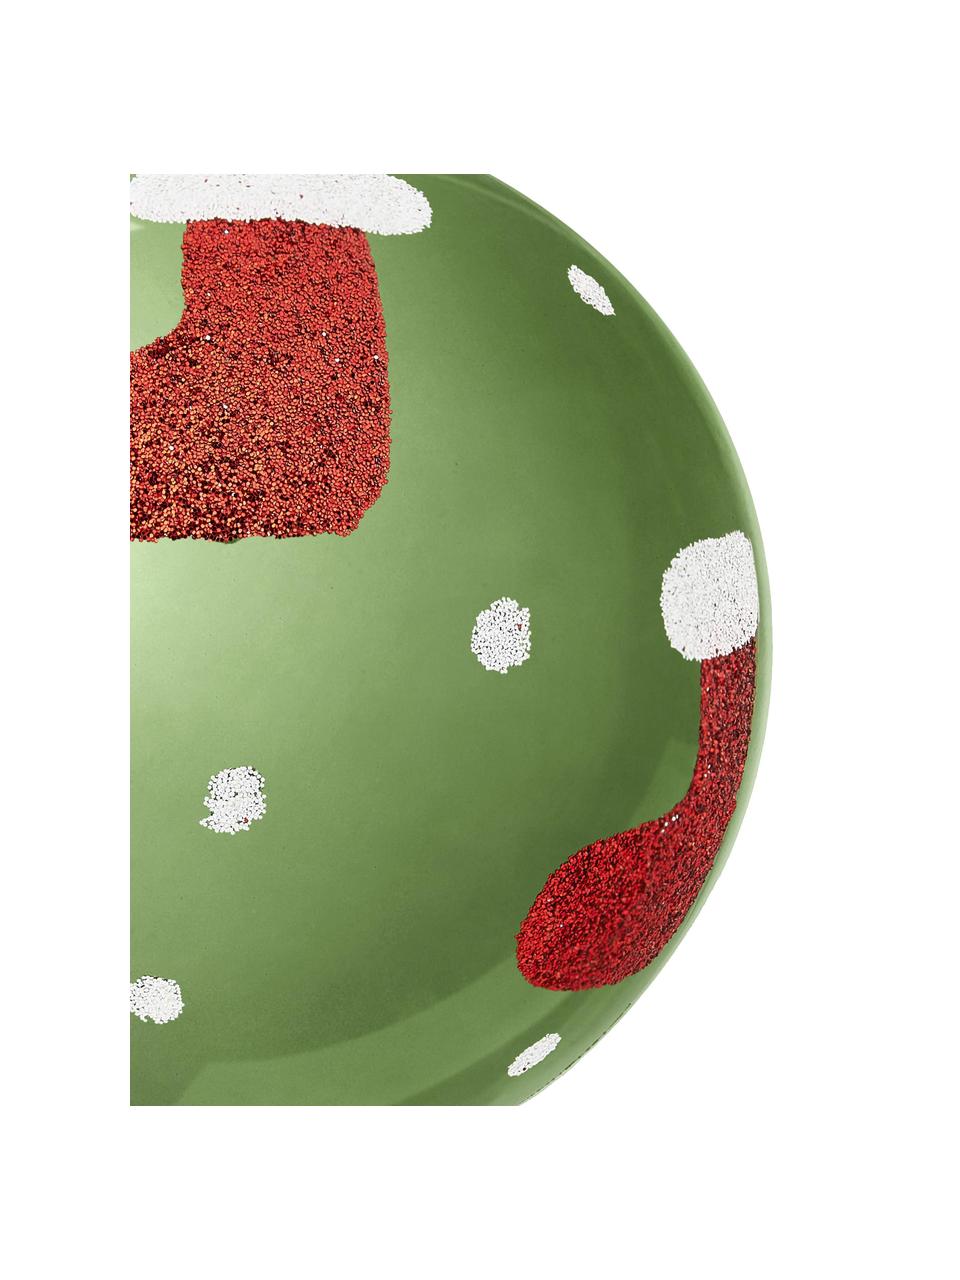 Bruchfeste Weihnachtskugeln Socky, 12 Stück, Kunststoff, Grün, Weiss, Rot, Silberfarben, Ø 8 cm